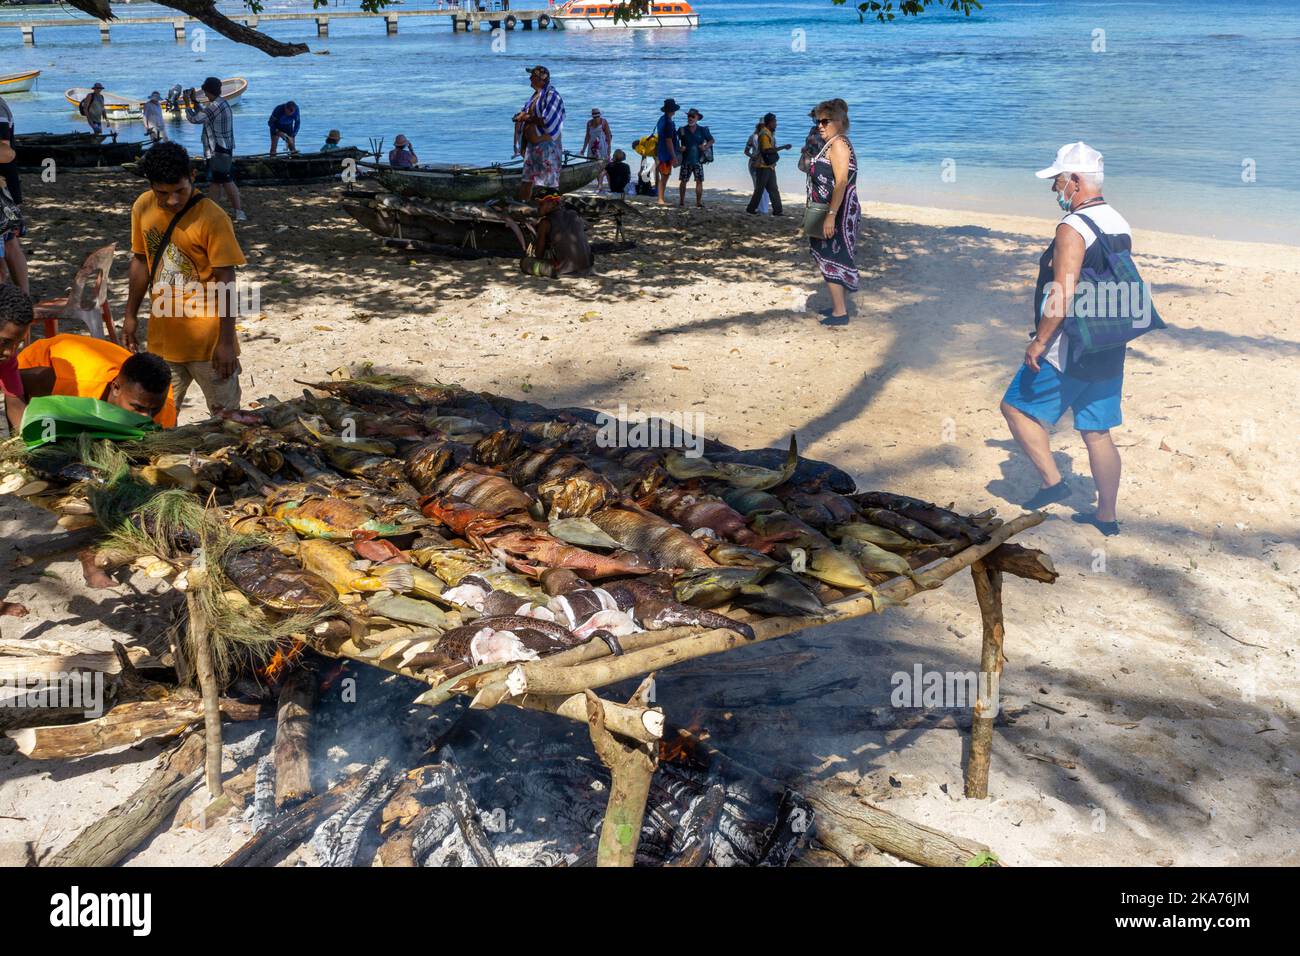 Les locaux préparent et cuisent du poisson au feu ouvert sur la plage, île de Kiriwina, province de Milne Bay, Papouasie-Nouvelle-Guinée Banque D'Images